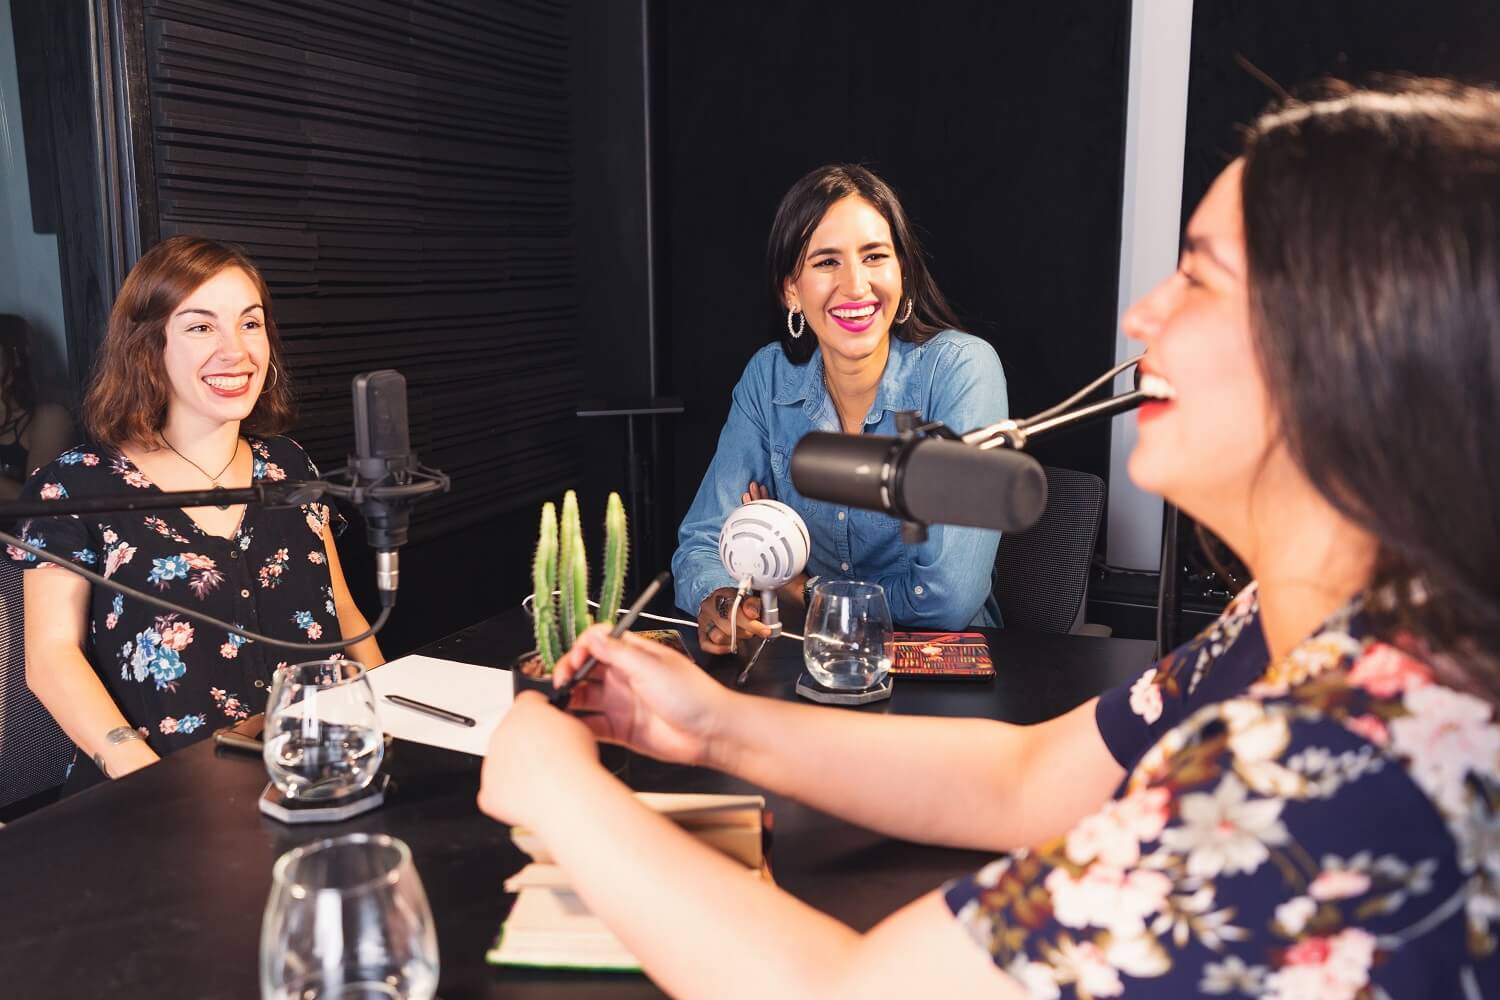 Drei Frauen unterhalten sich während eines Employer Branding Podcasts miteinander.